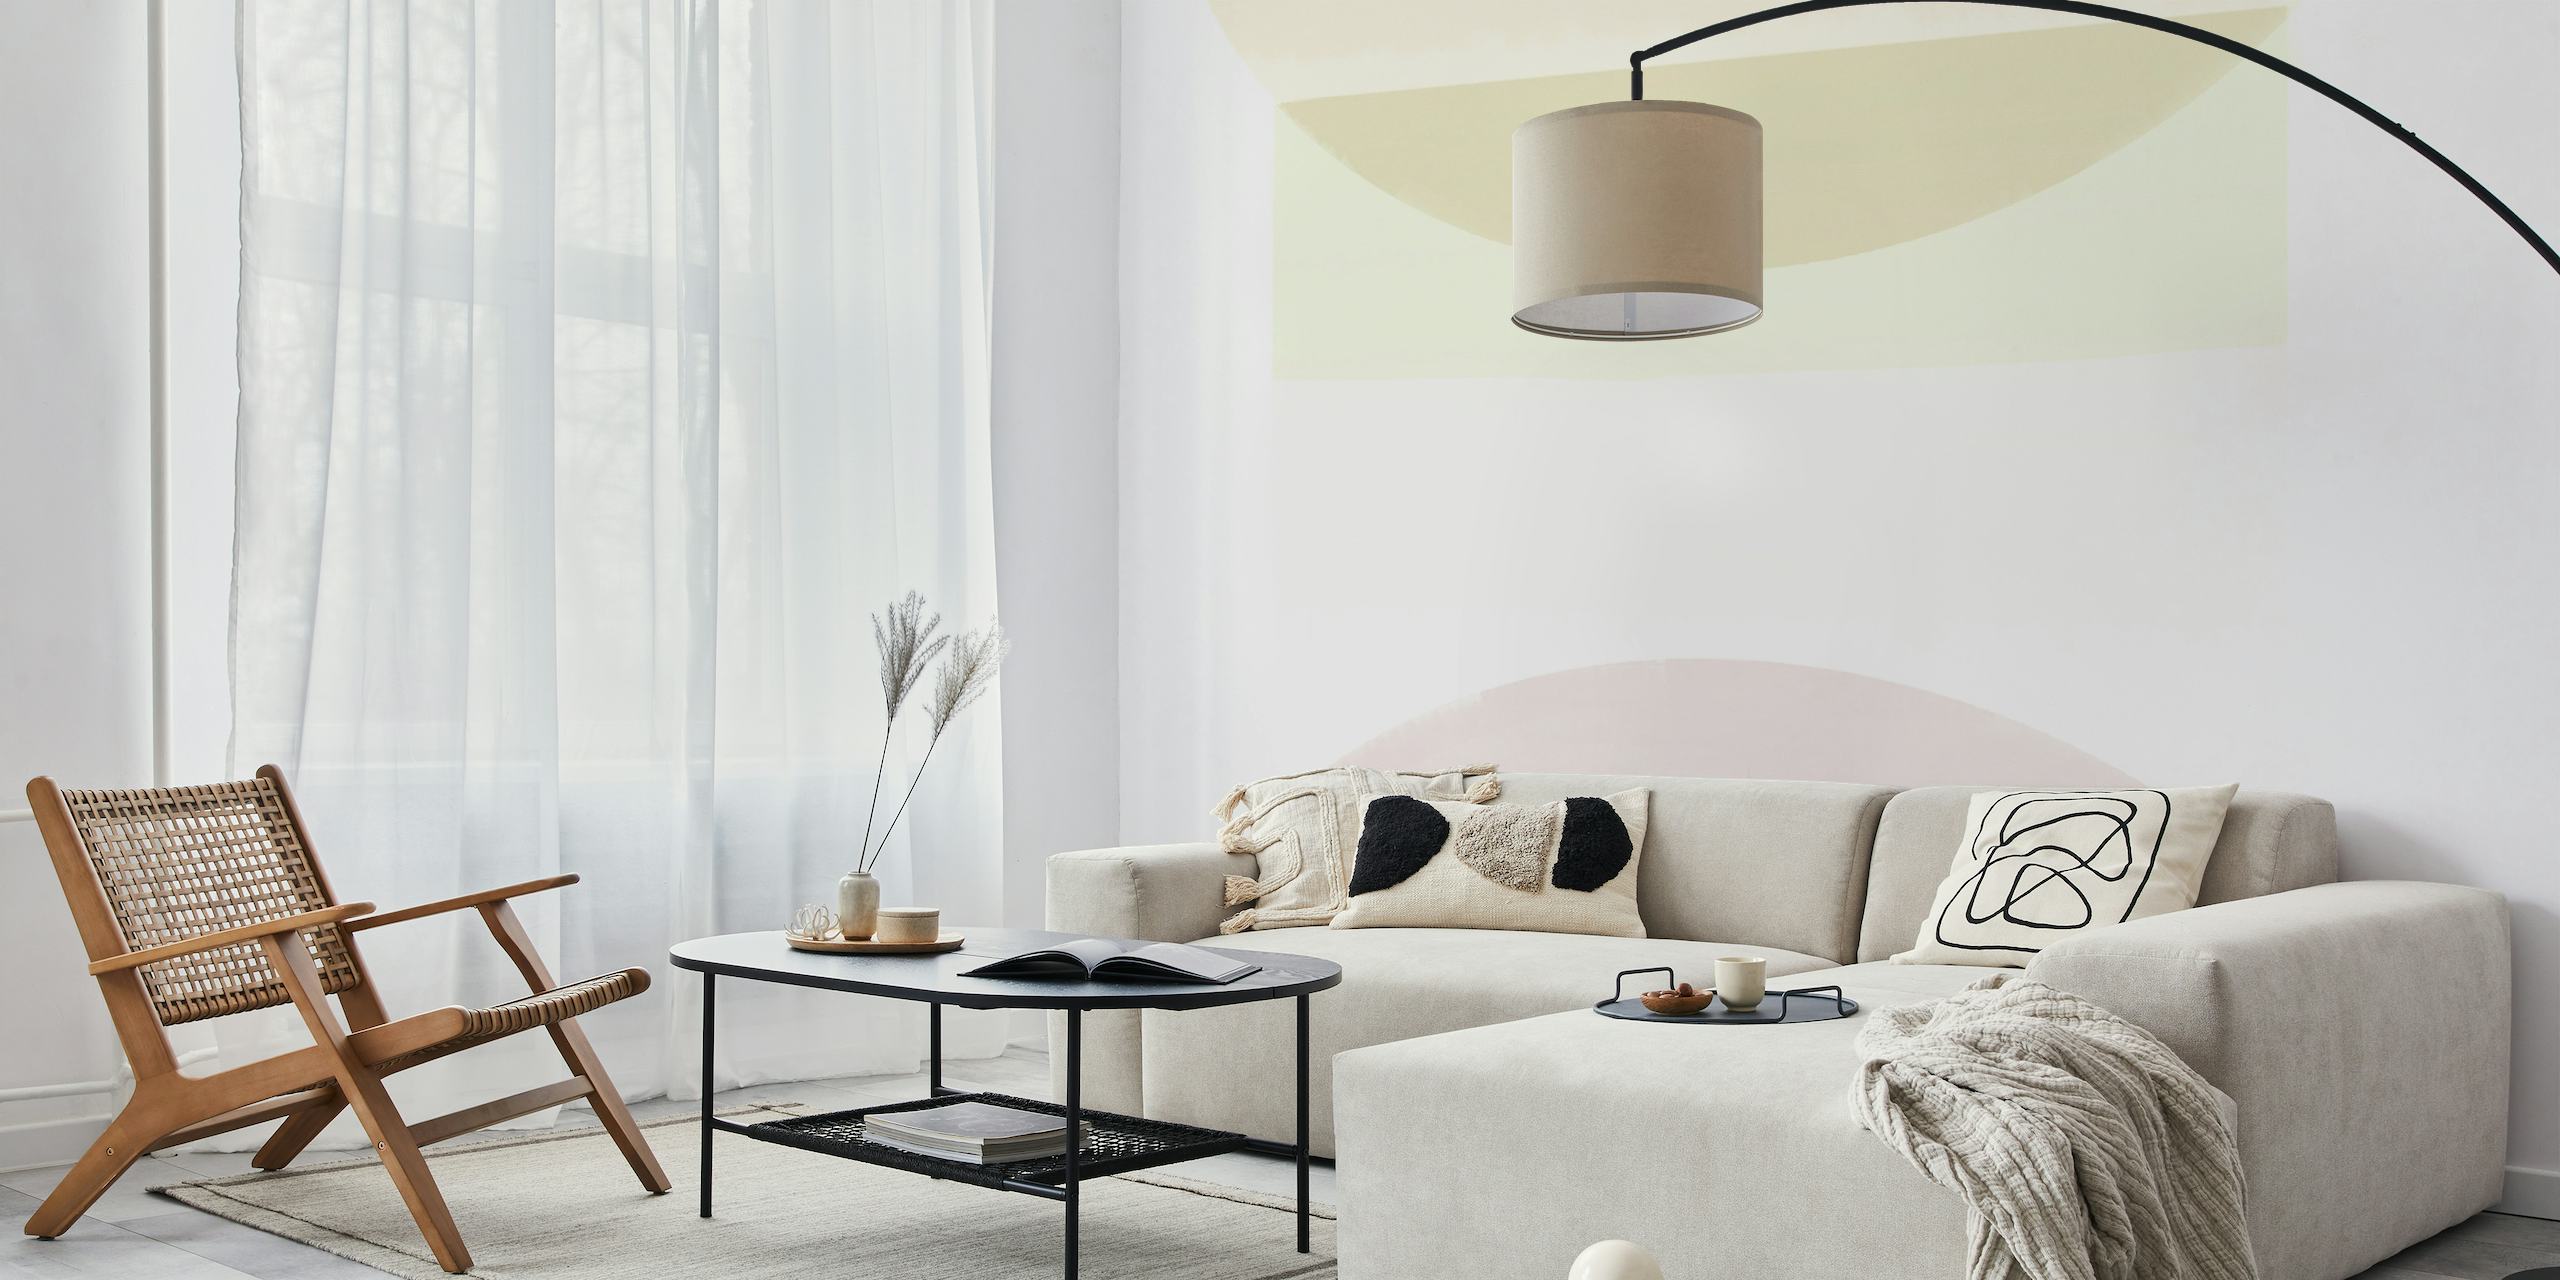 Fotomural minimalista estilo Bauhaus con suaves pasteles y formas geométricas